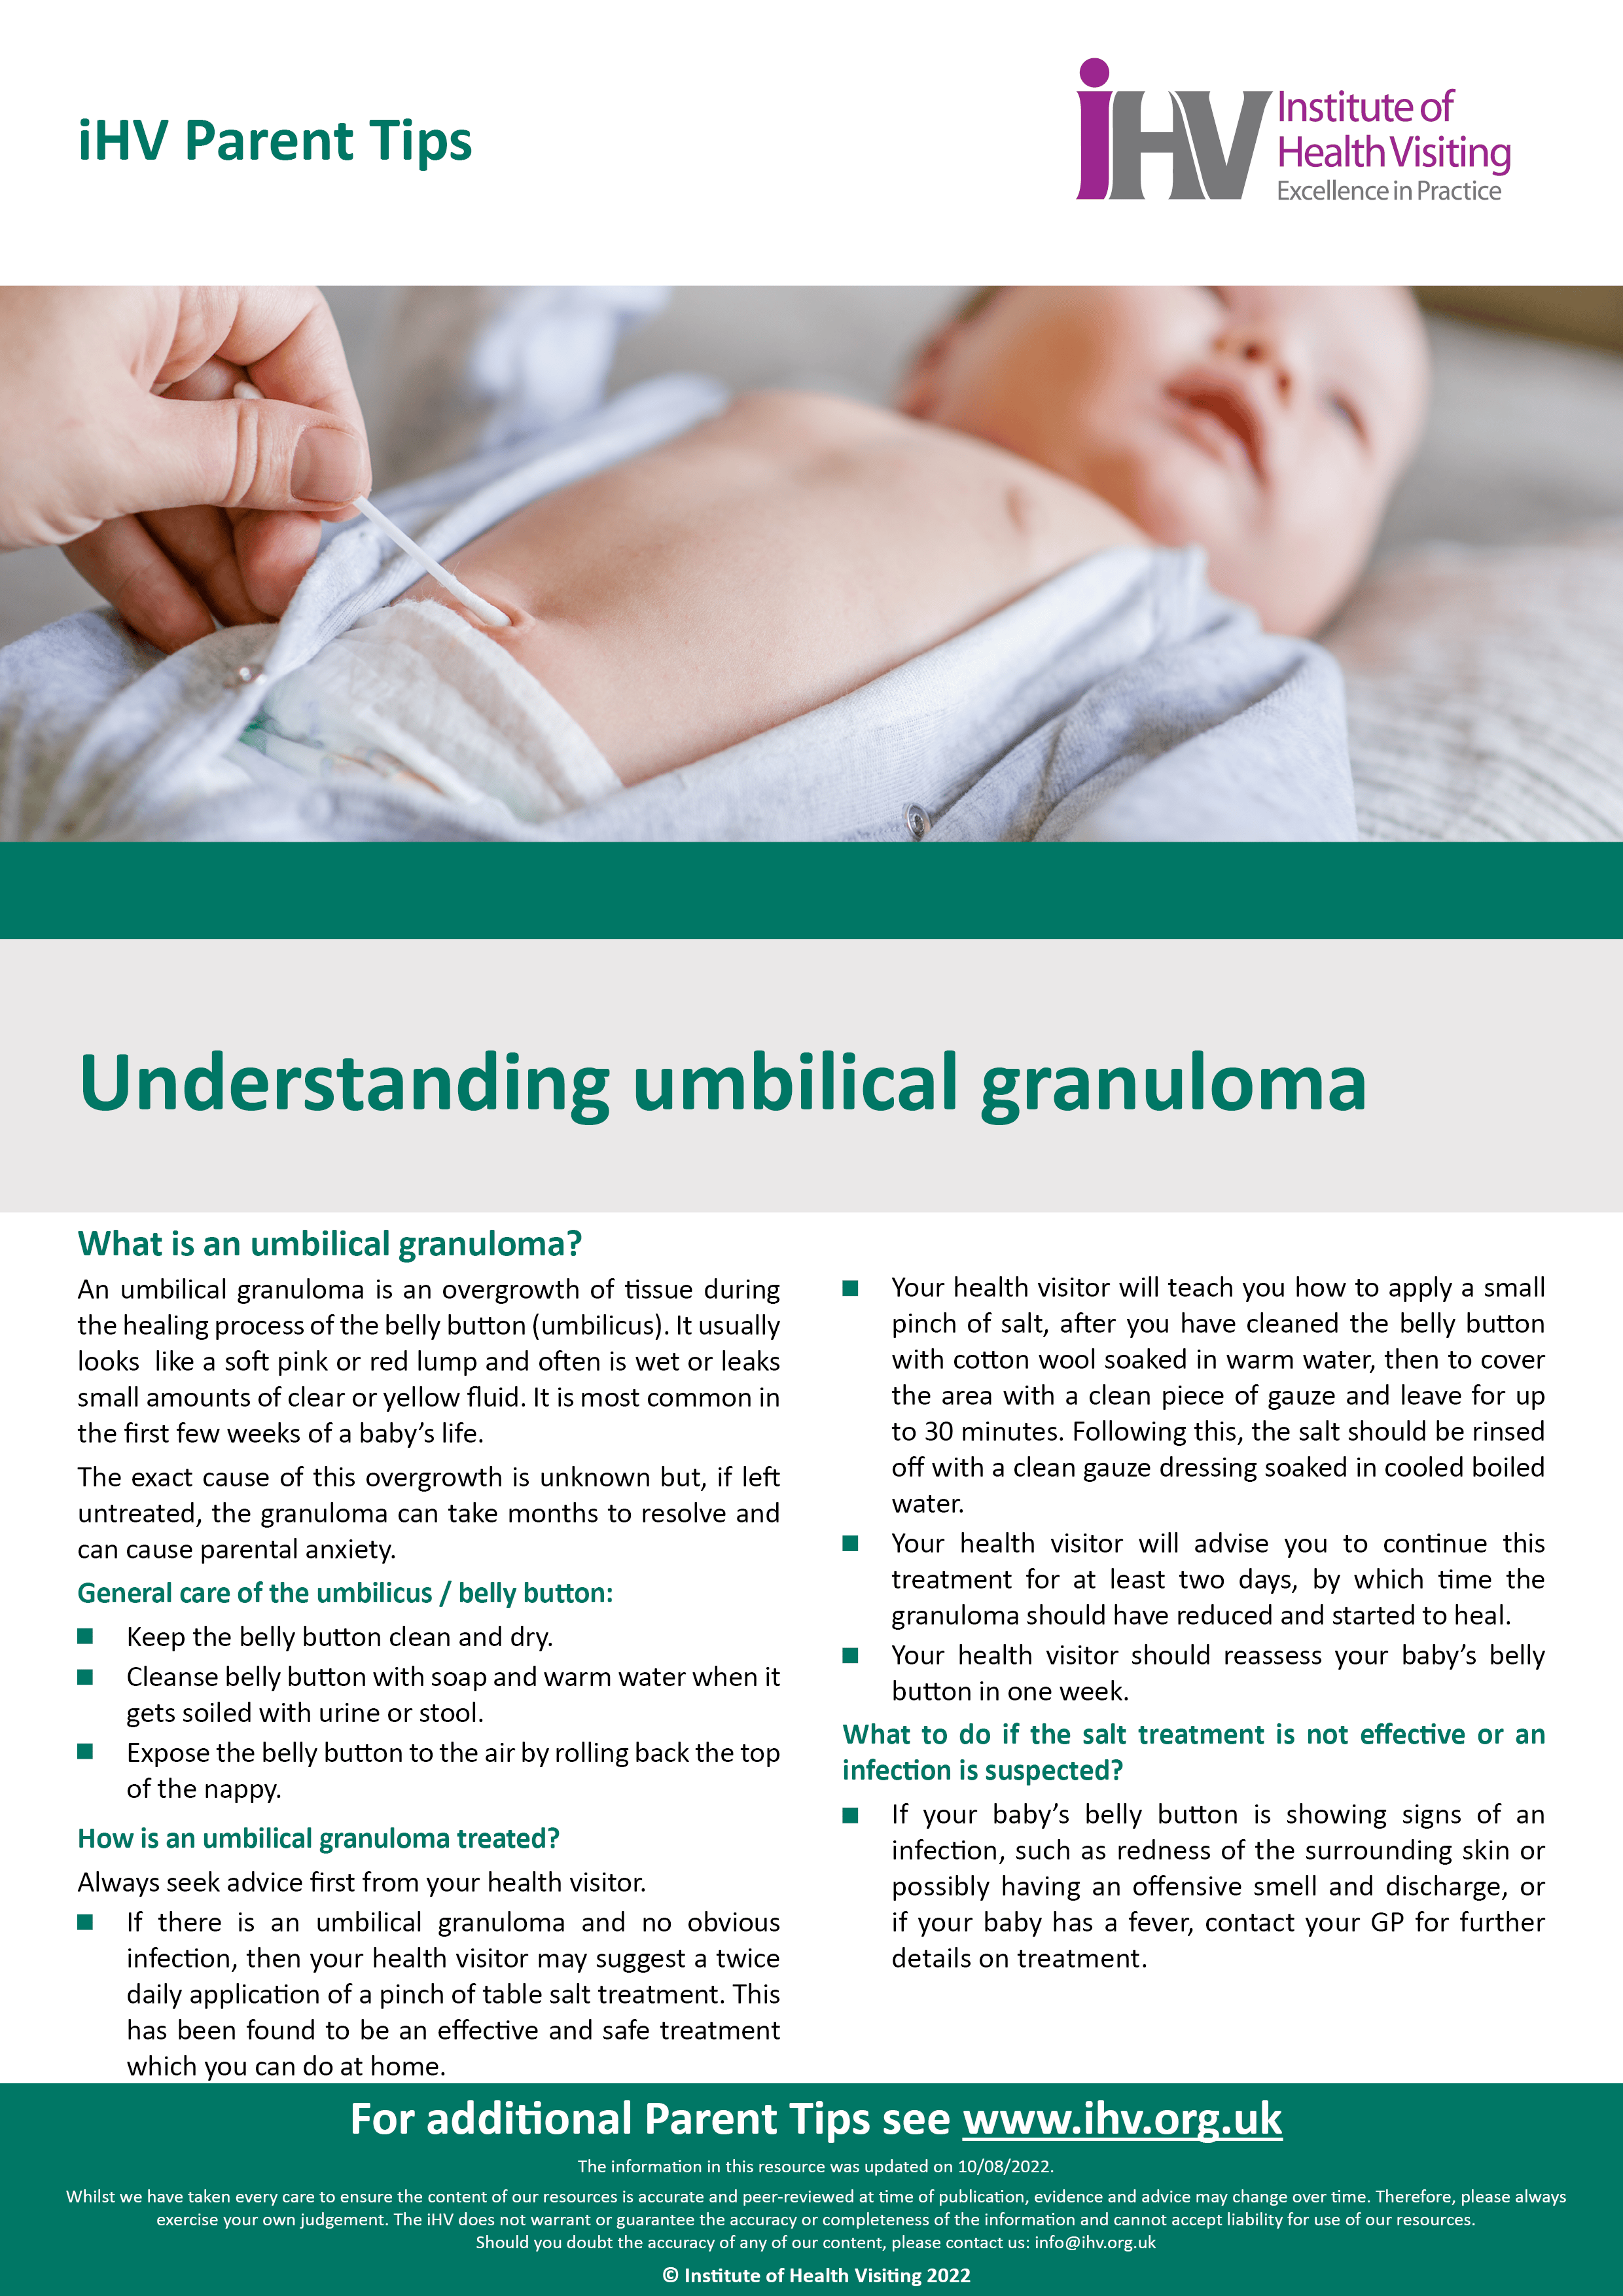 https://ihv.org.uk/wp-content/uploads/2015/11/PT-Understanding-umbilical-granuloma-FINAL-VERSION-10.8.22.png